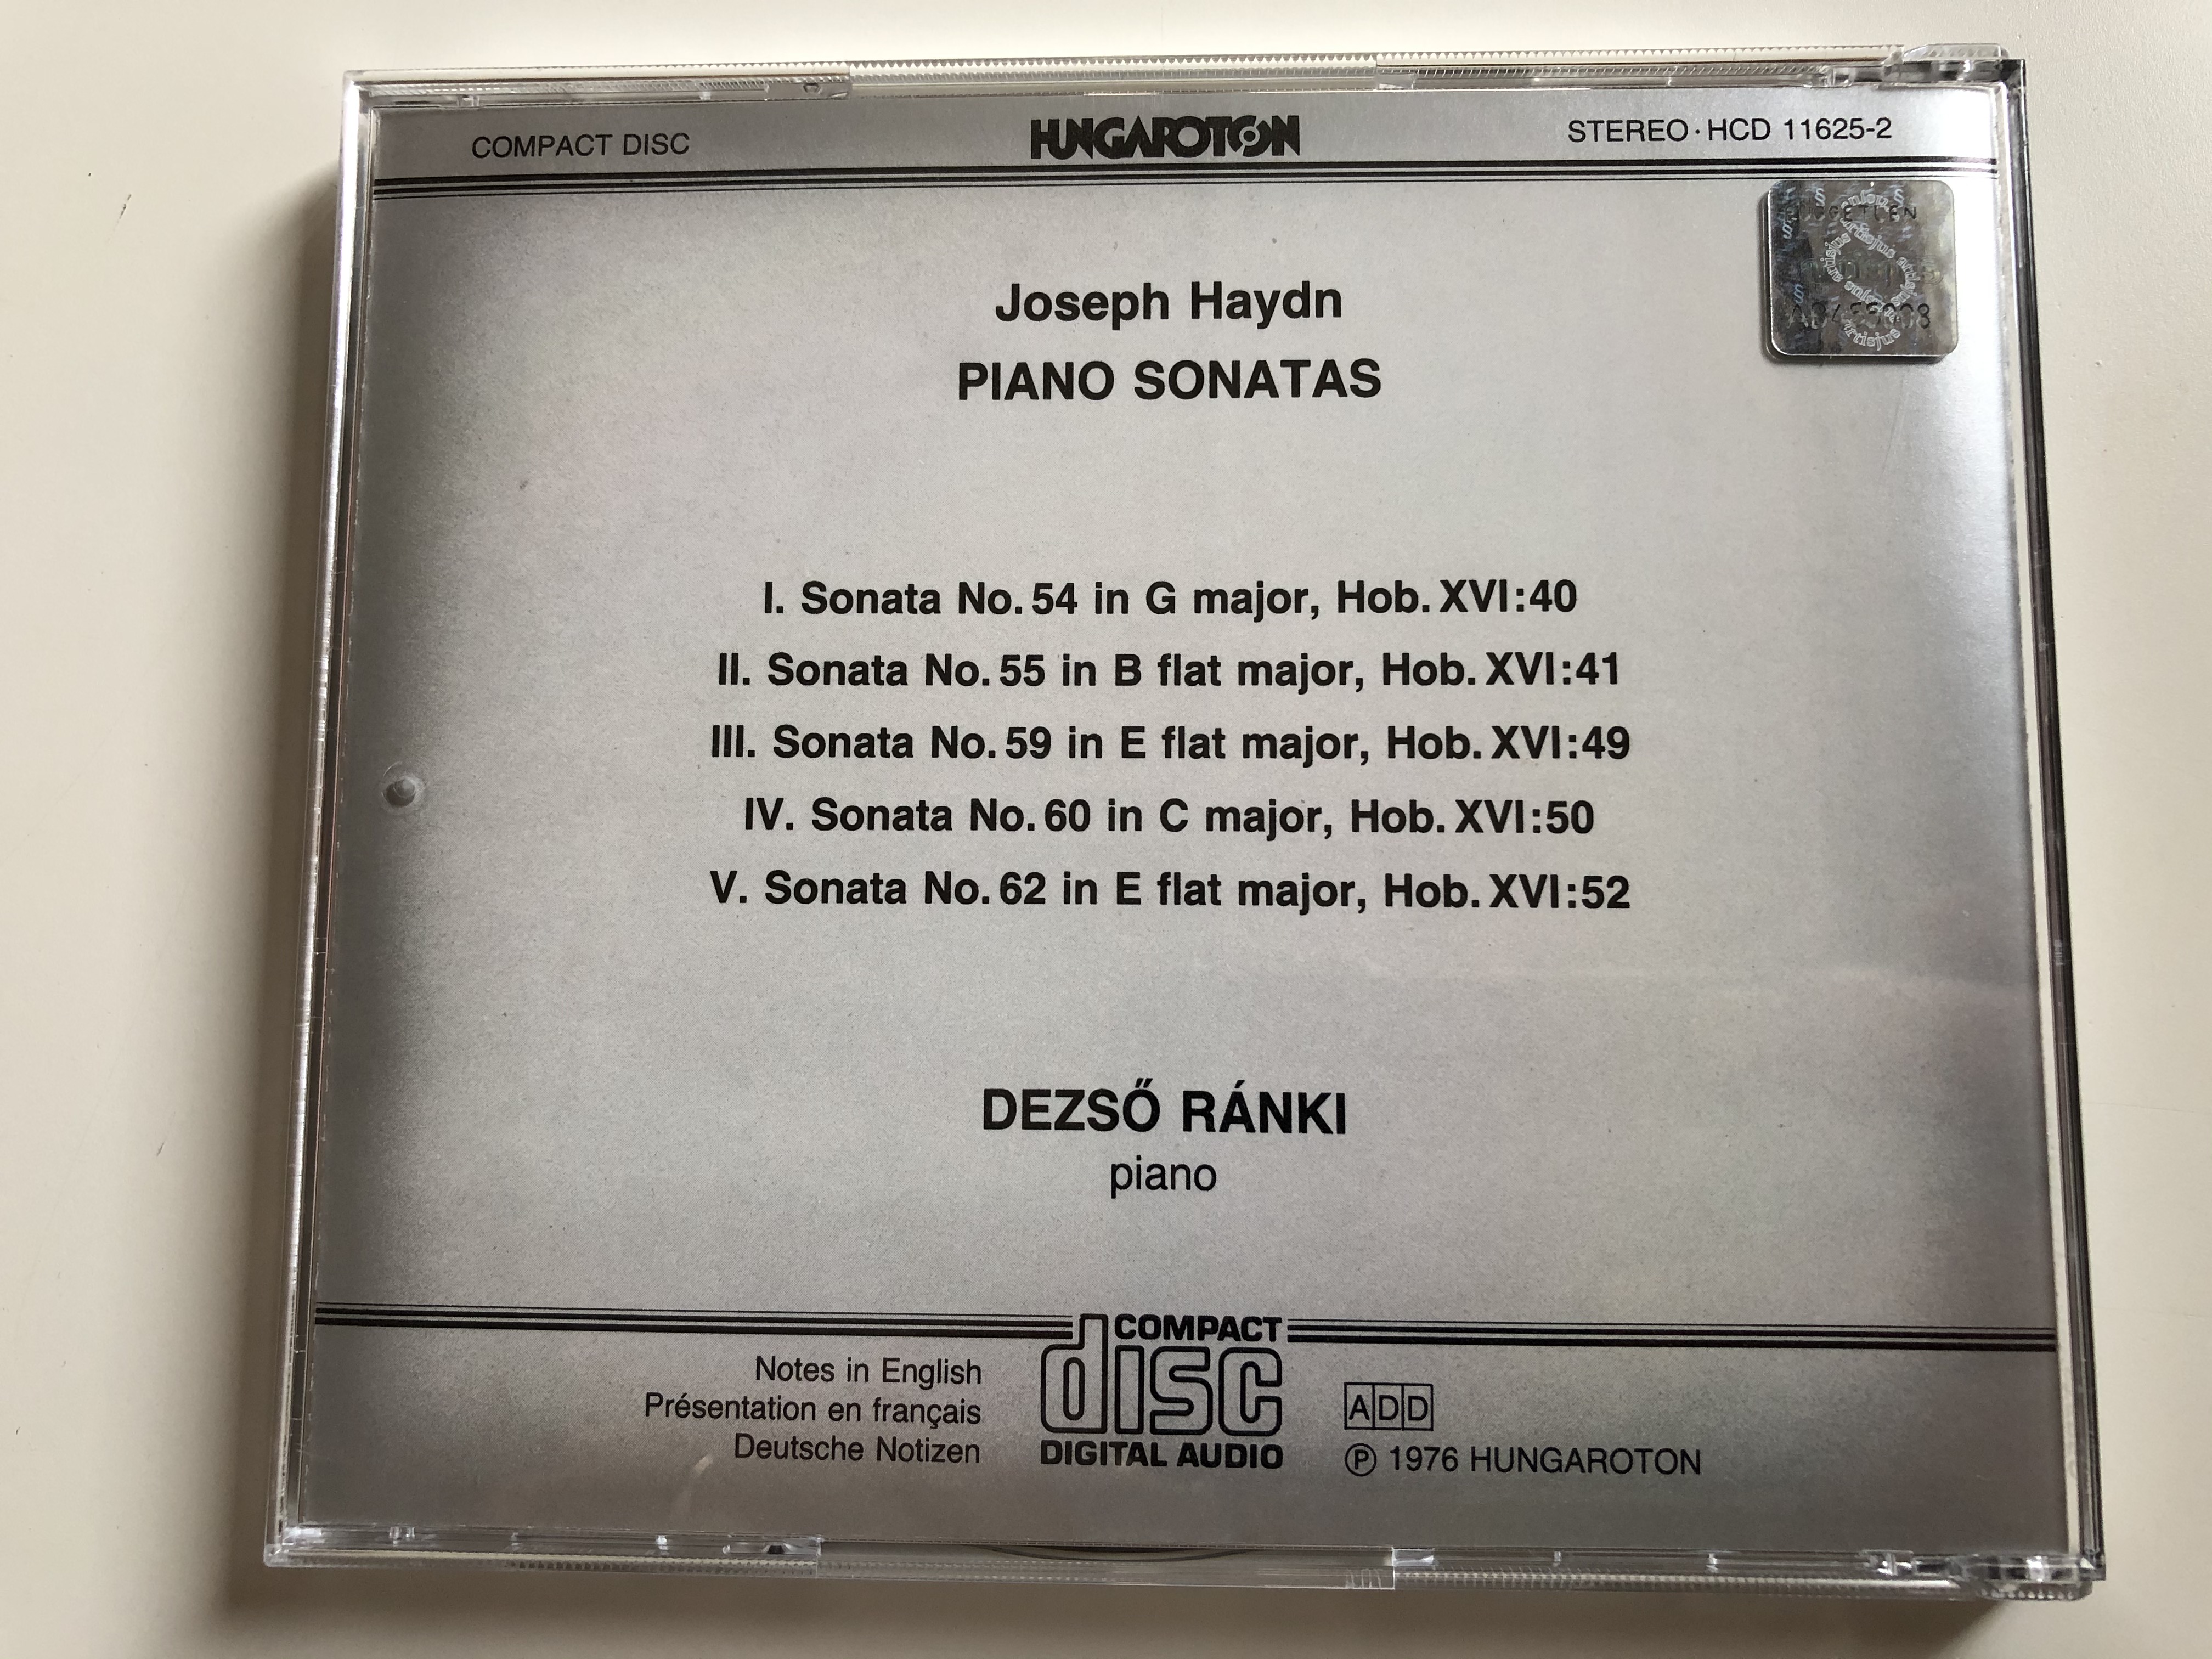 joseph-haydn-sonatas-nos-54-55-59-60-62-dezso-ranki-piano-hungaroton-audio-cd-1976-stereo-hcd-11625-2-7-.jpg